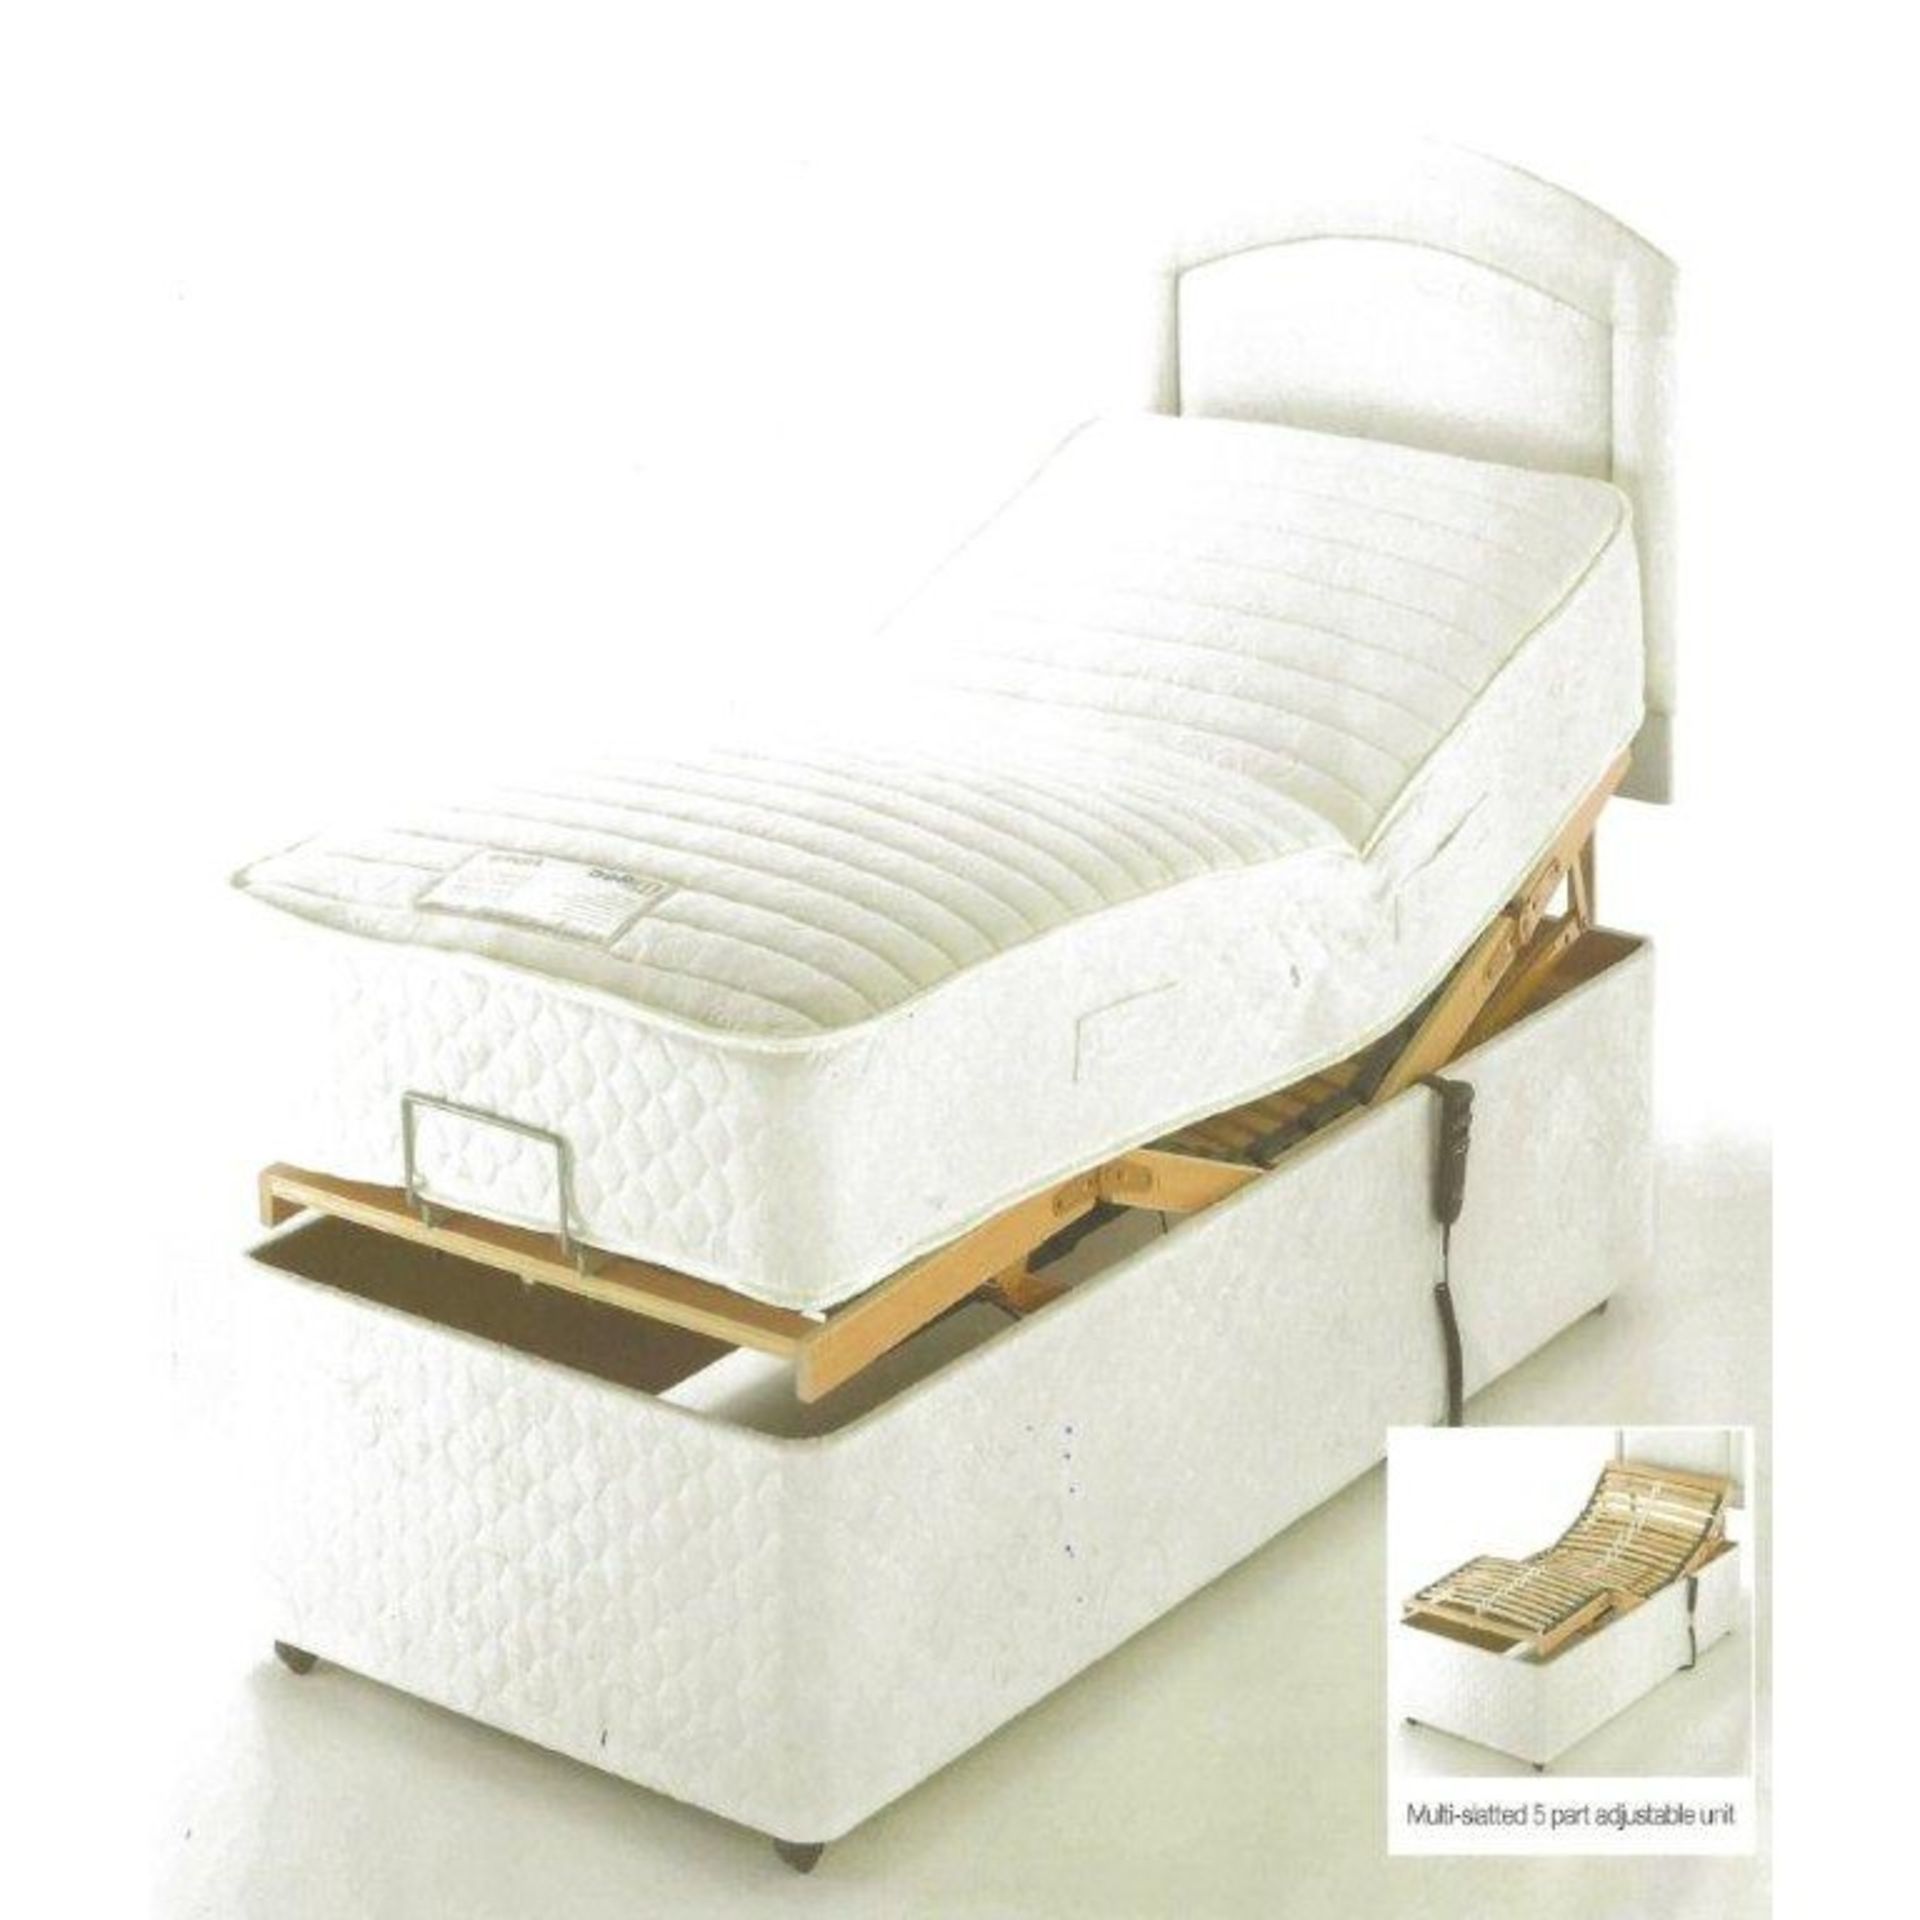 Brand New 30 Single Alpina Adjustable Electric Bed With Pocket Sprung Mattress